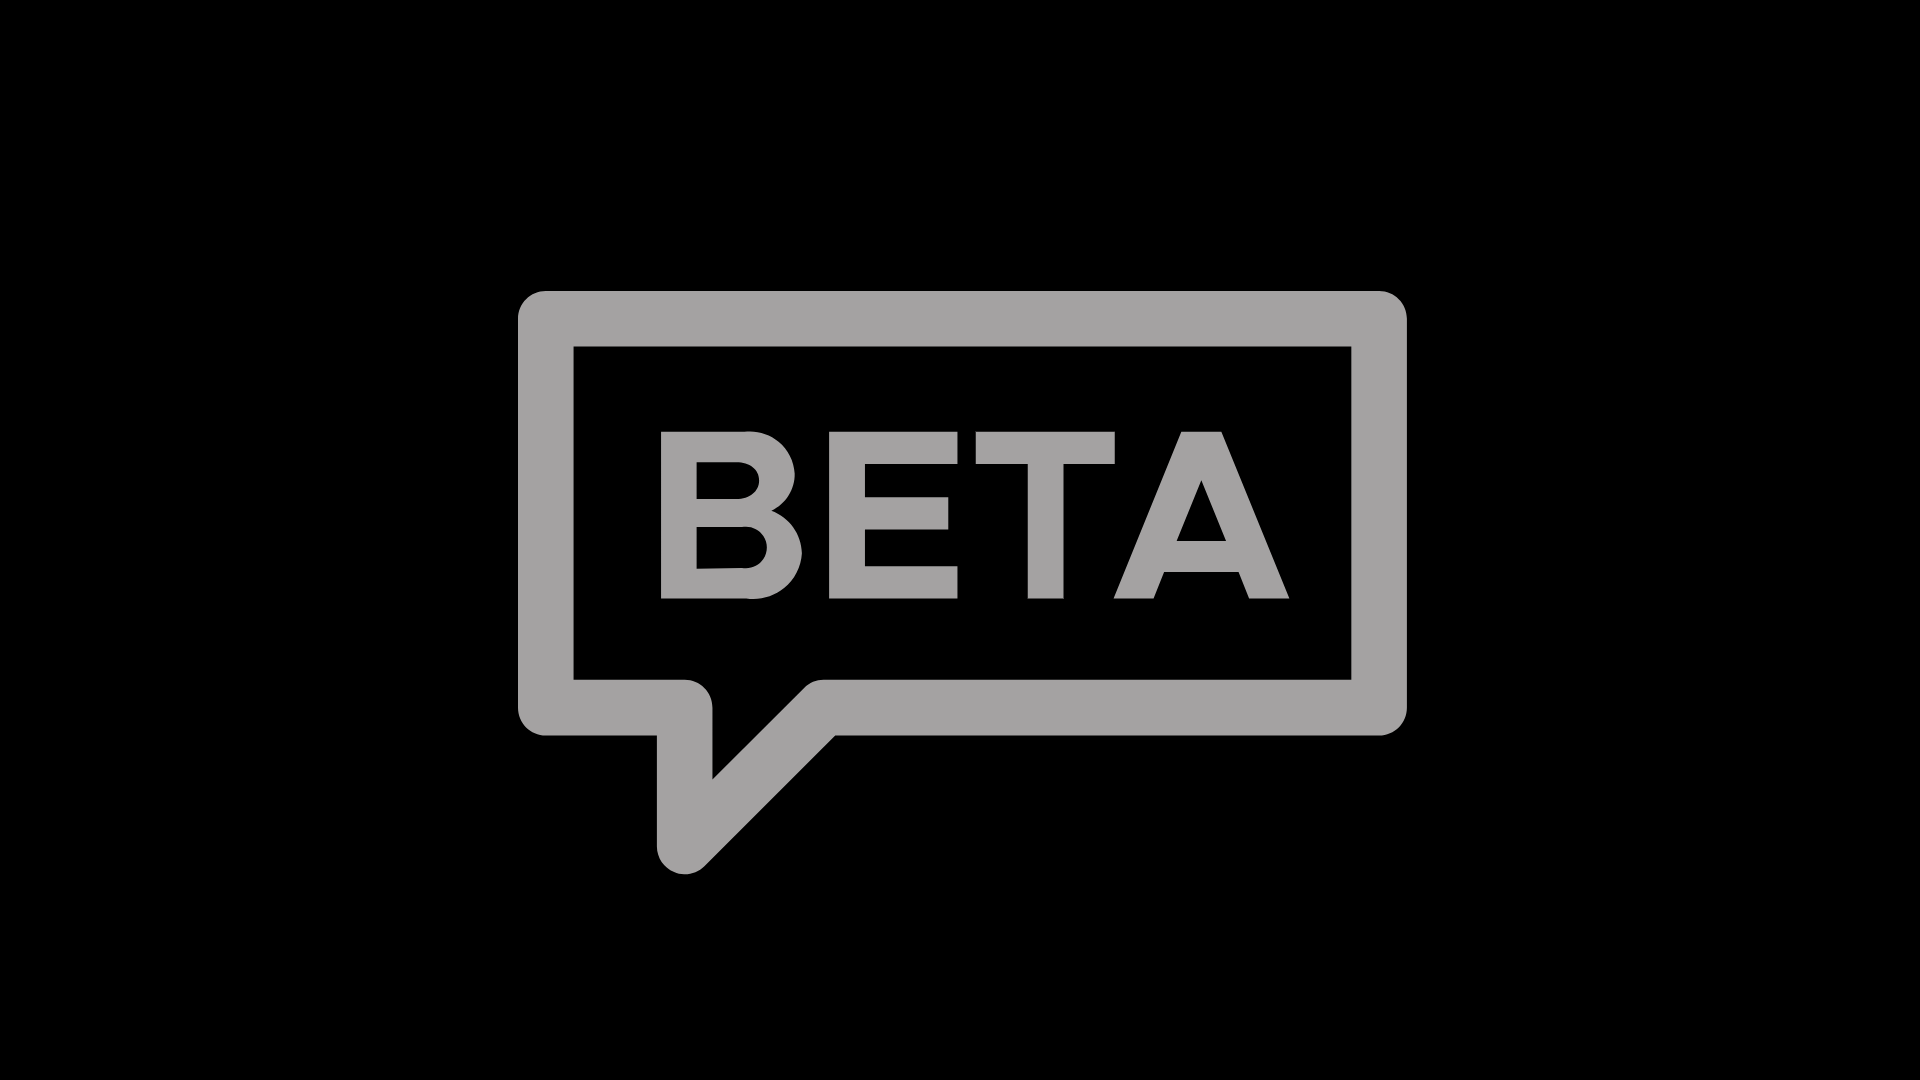 Beta Testing Blog Image